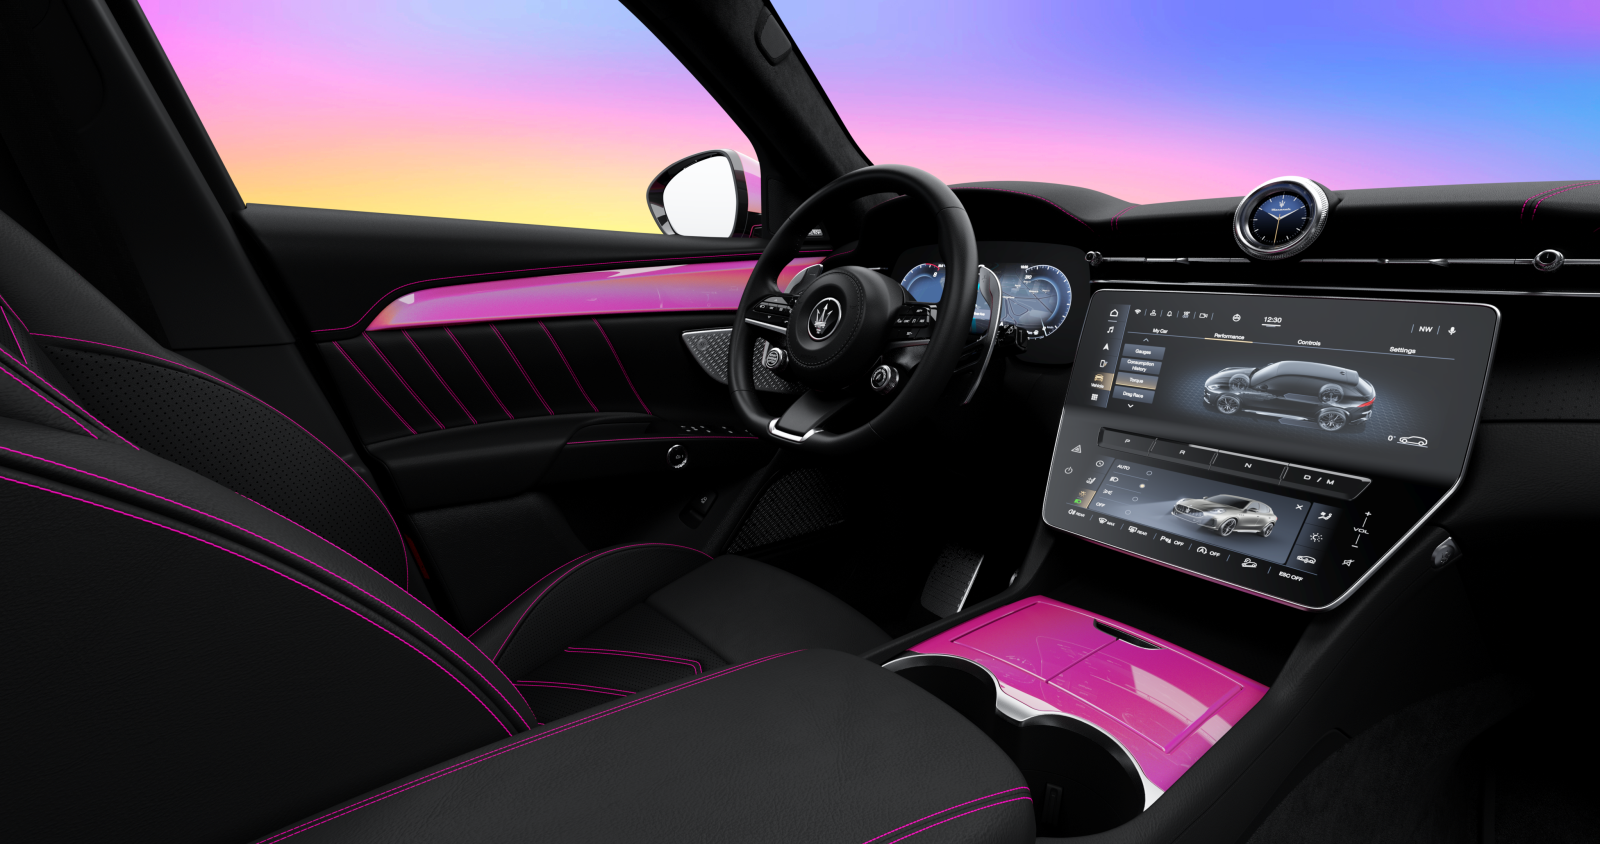 20302-MaseratiandBarbiejoinforcesforanunprecedentedcollaboration